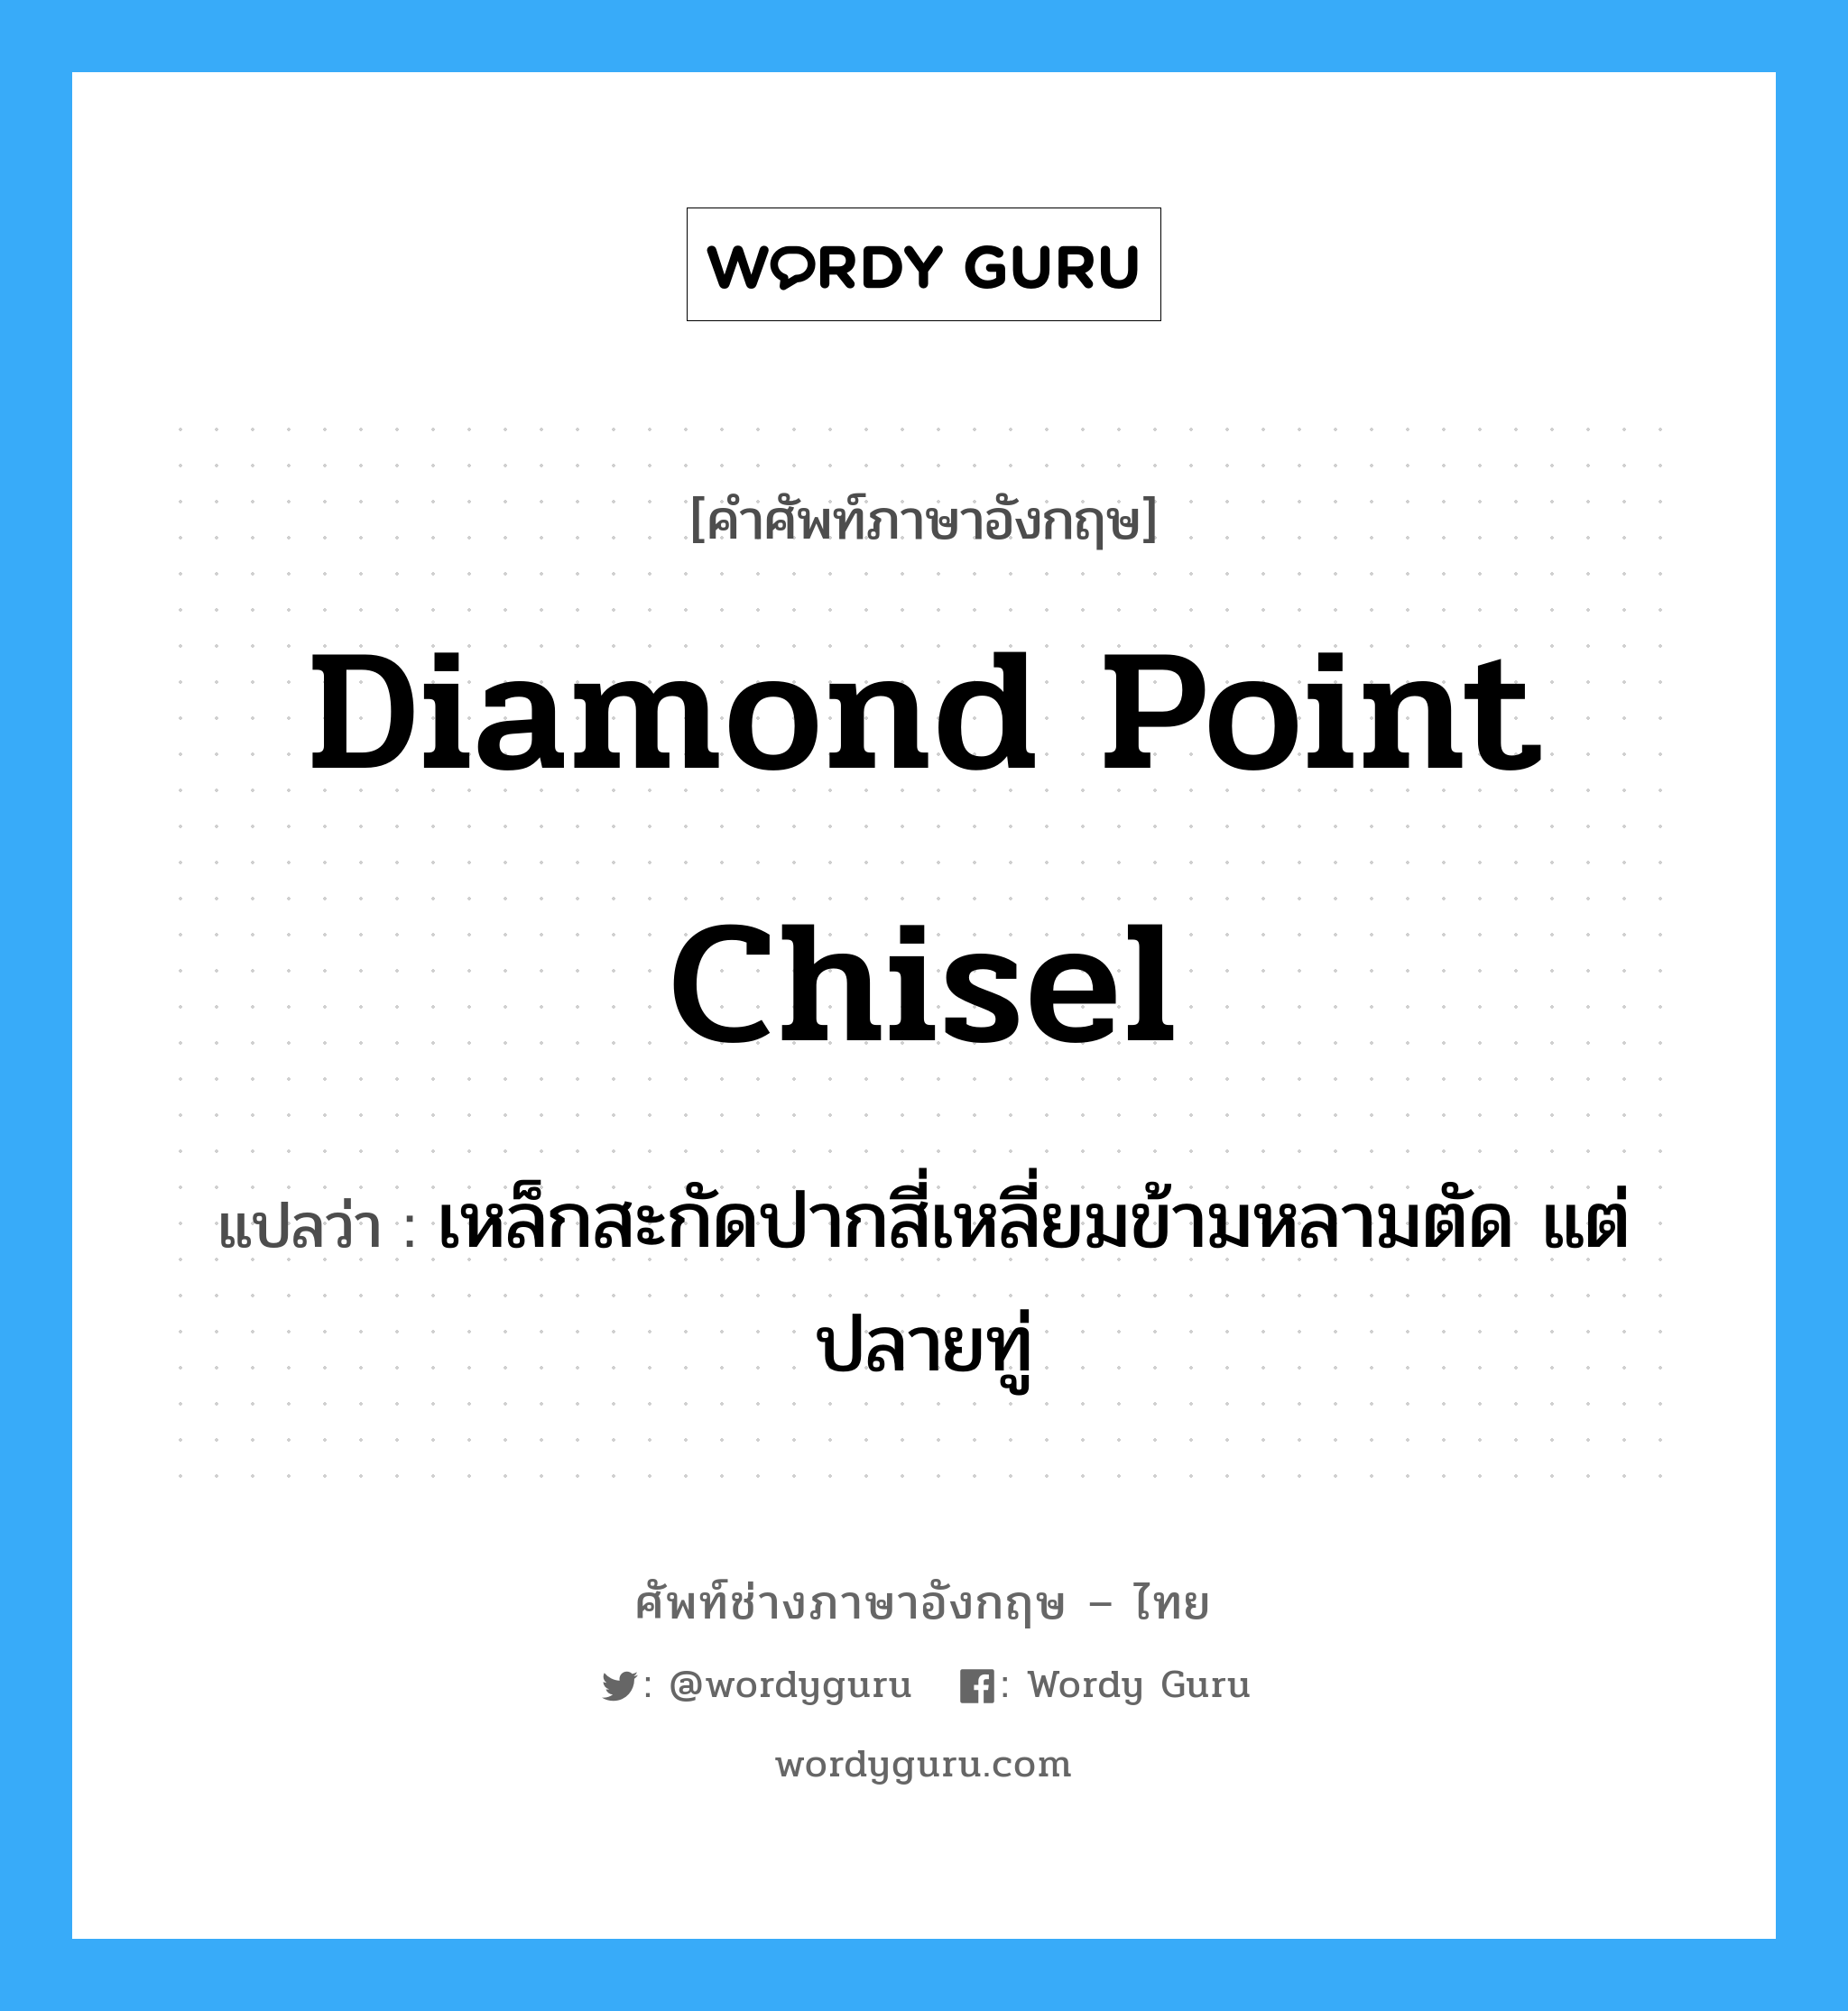 diamond-point chisel แปลว่า?, คำศัพท์ช่างภาษาอังกฤษ - ไทย diamond point chisel คำศัพท์ภาษาอังกฤษ diamond point chisel แปลว่า เหล็กสะกัดปากสี่เหลี่ยมข้ามหลามตัด แต่ปลายทู่